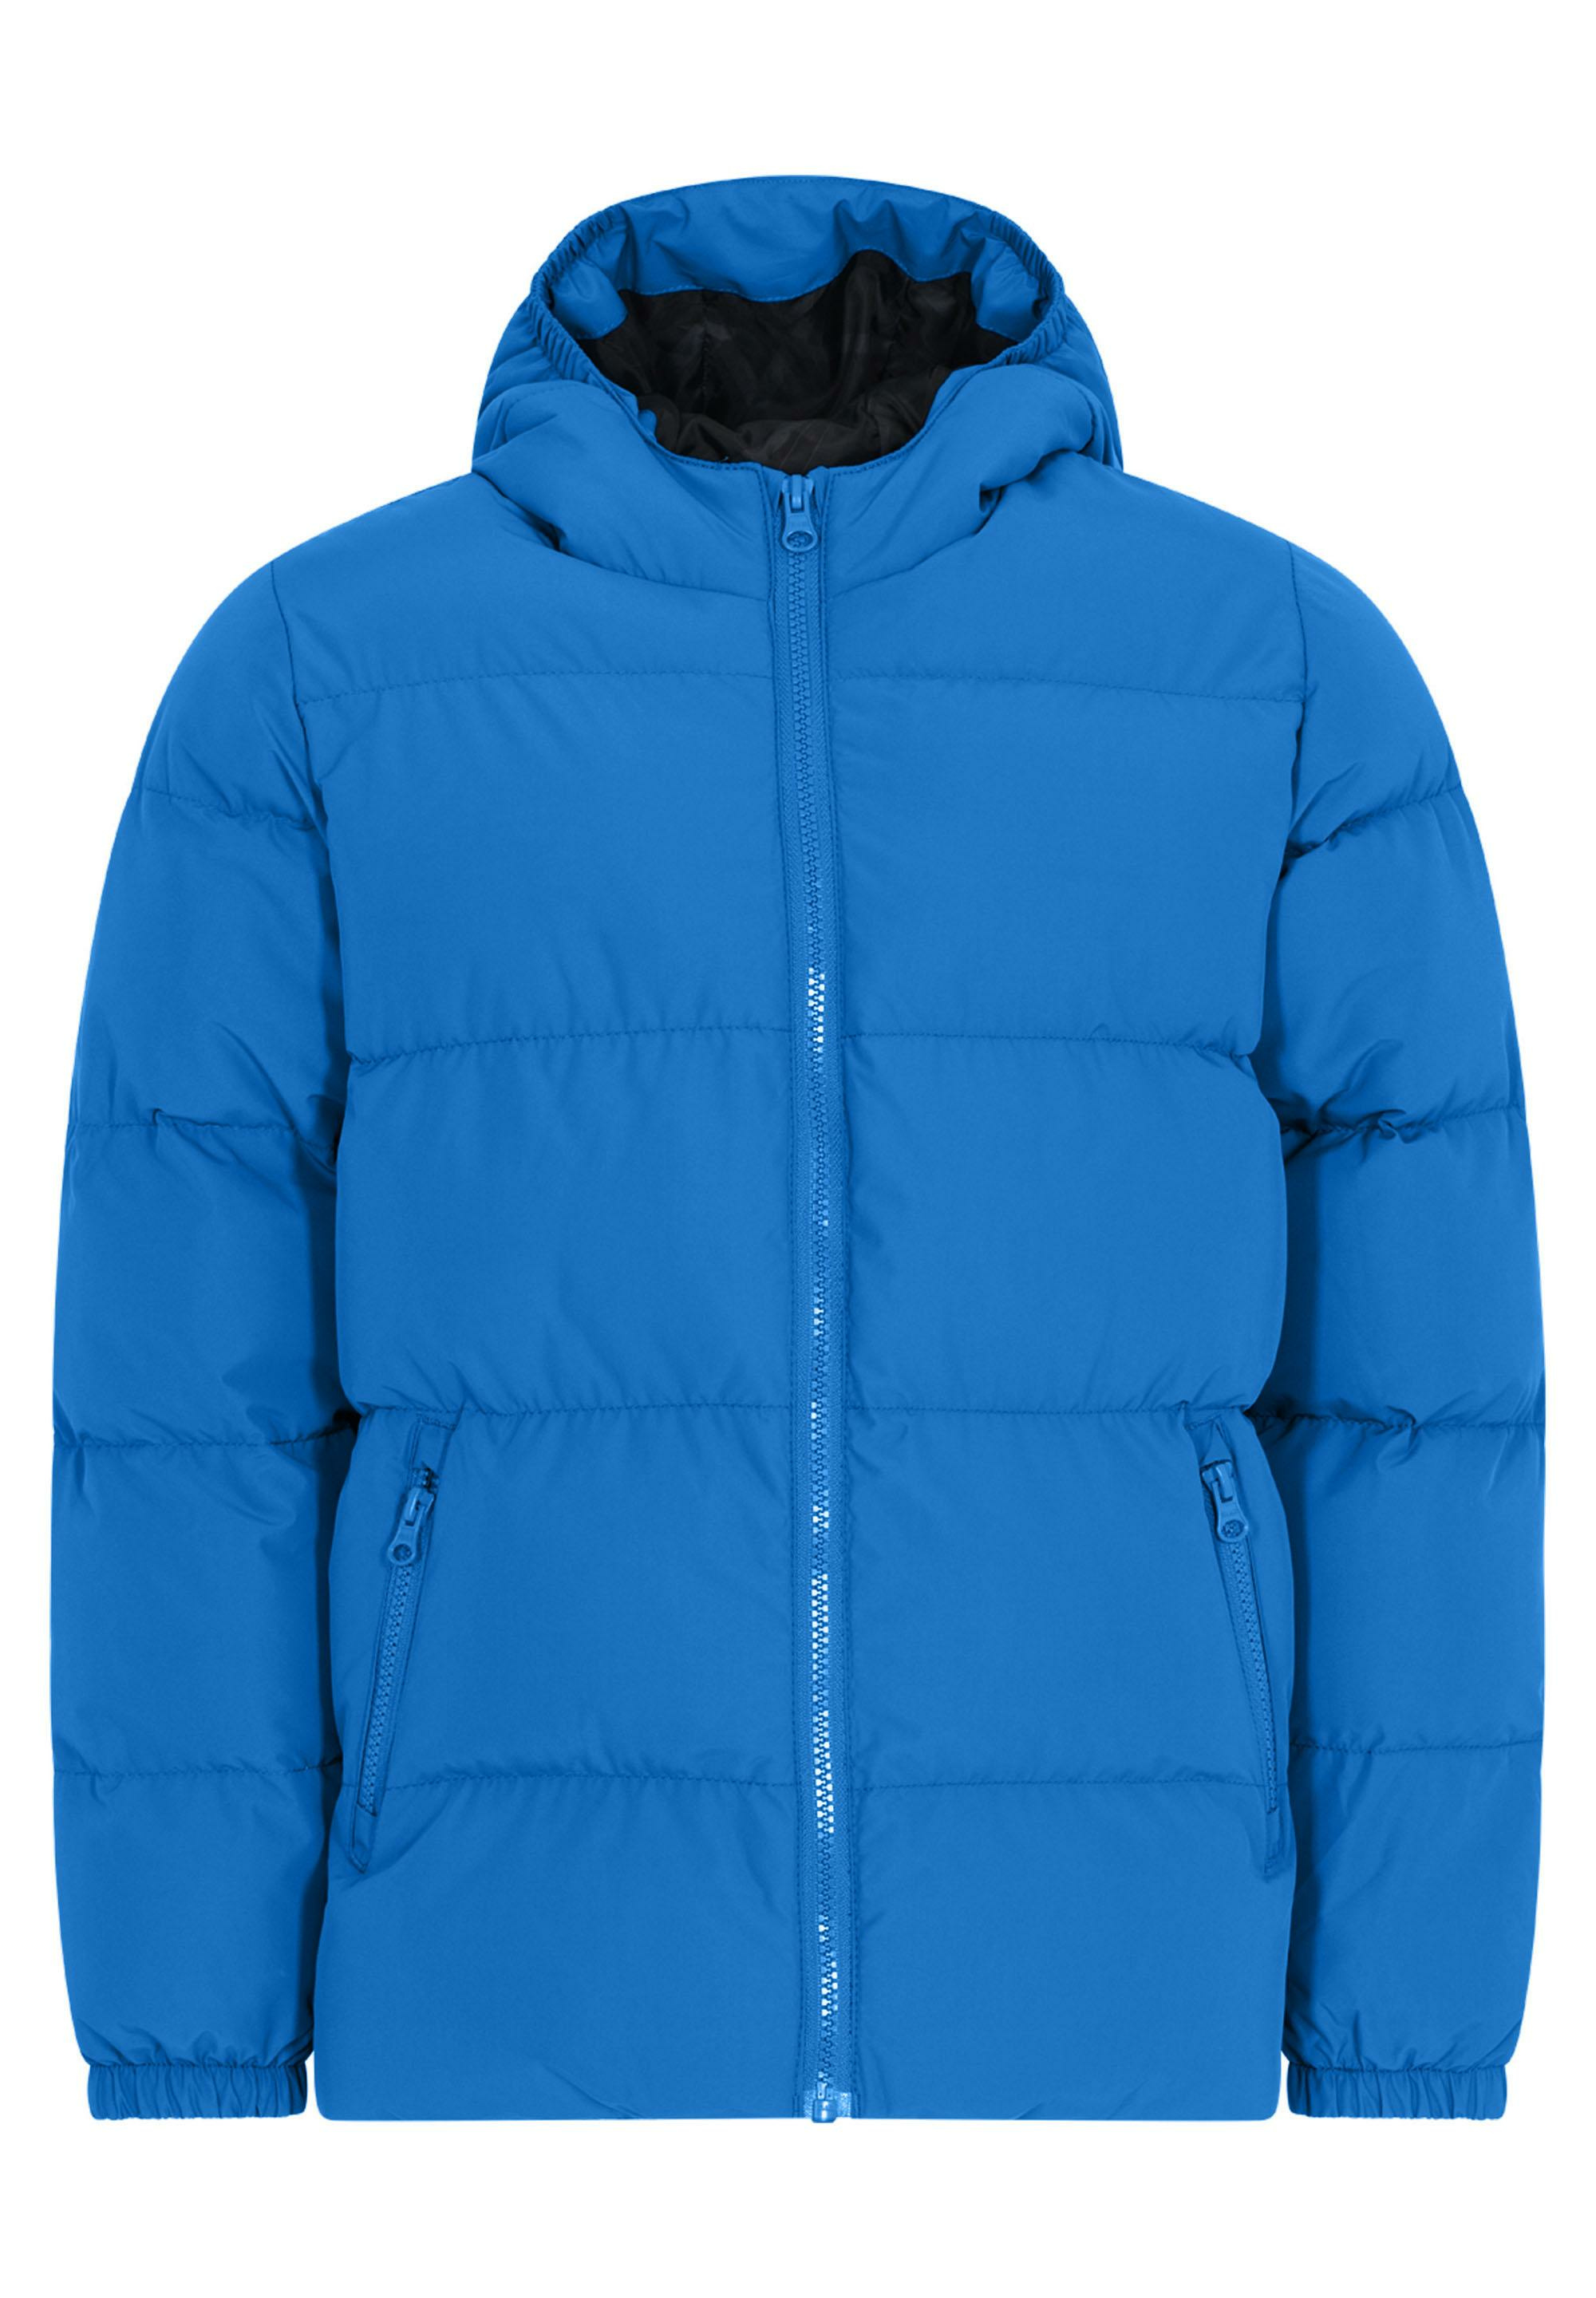 Функциональная куртка KABOOKI Jacke KBJASON 100, цвет Middle Blue oracal 8500 f005 middle blue 1 26x50 м